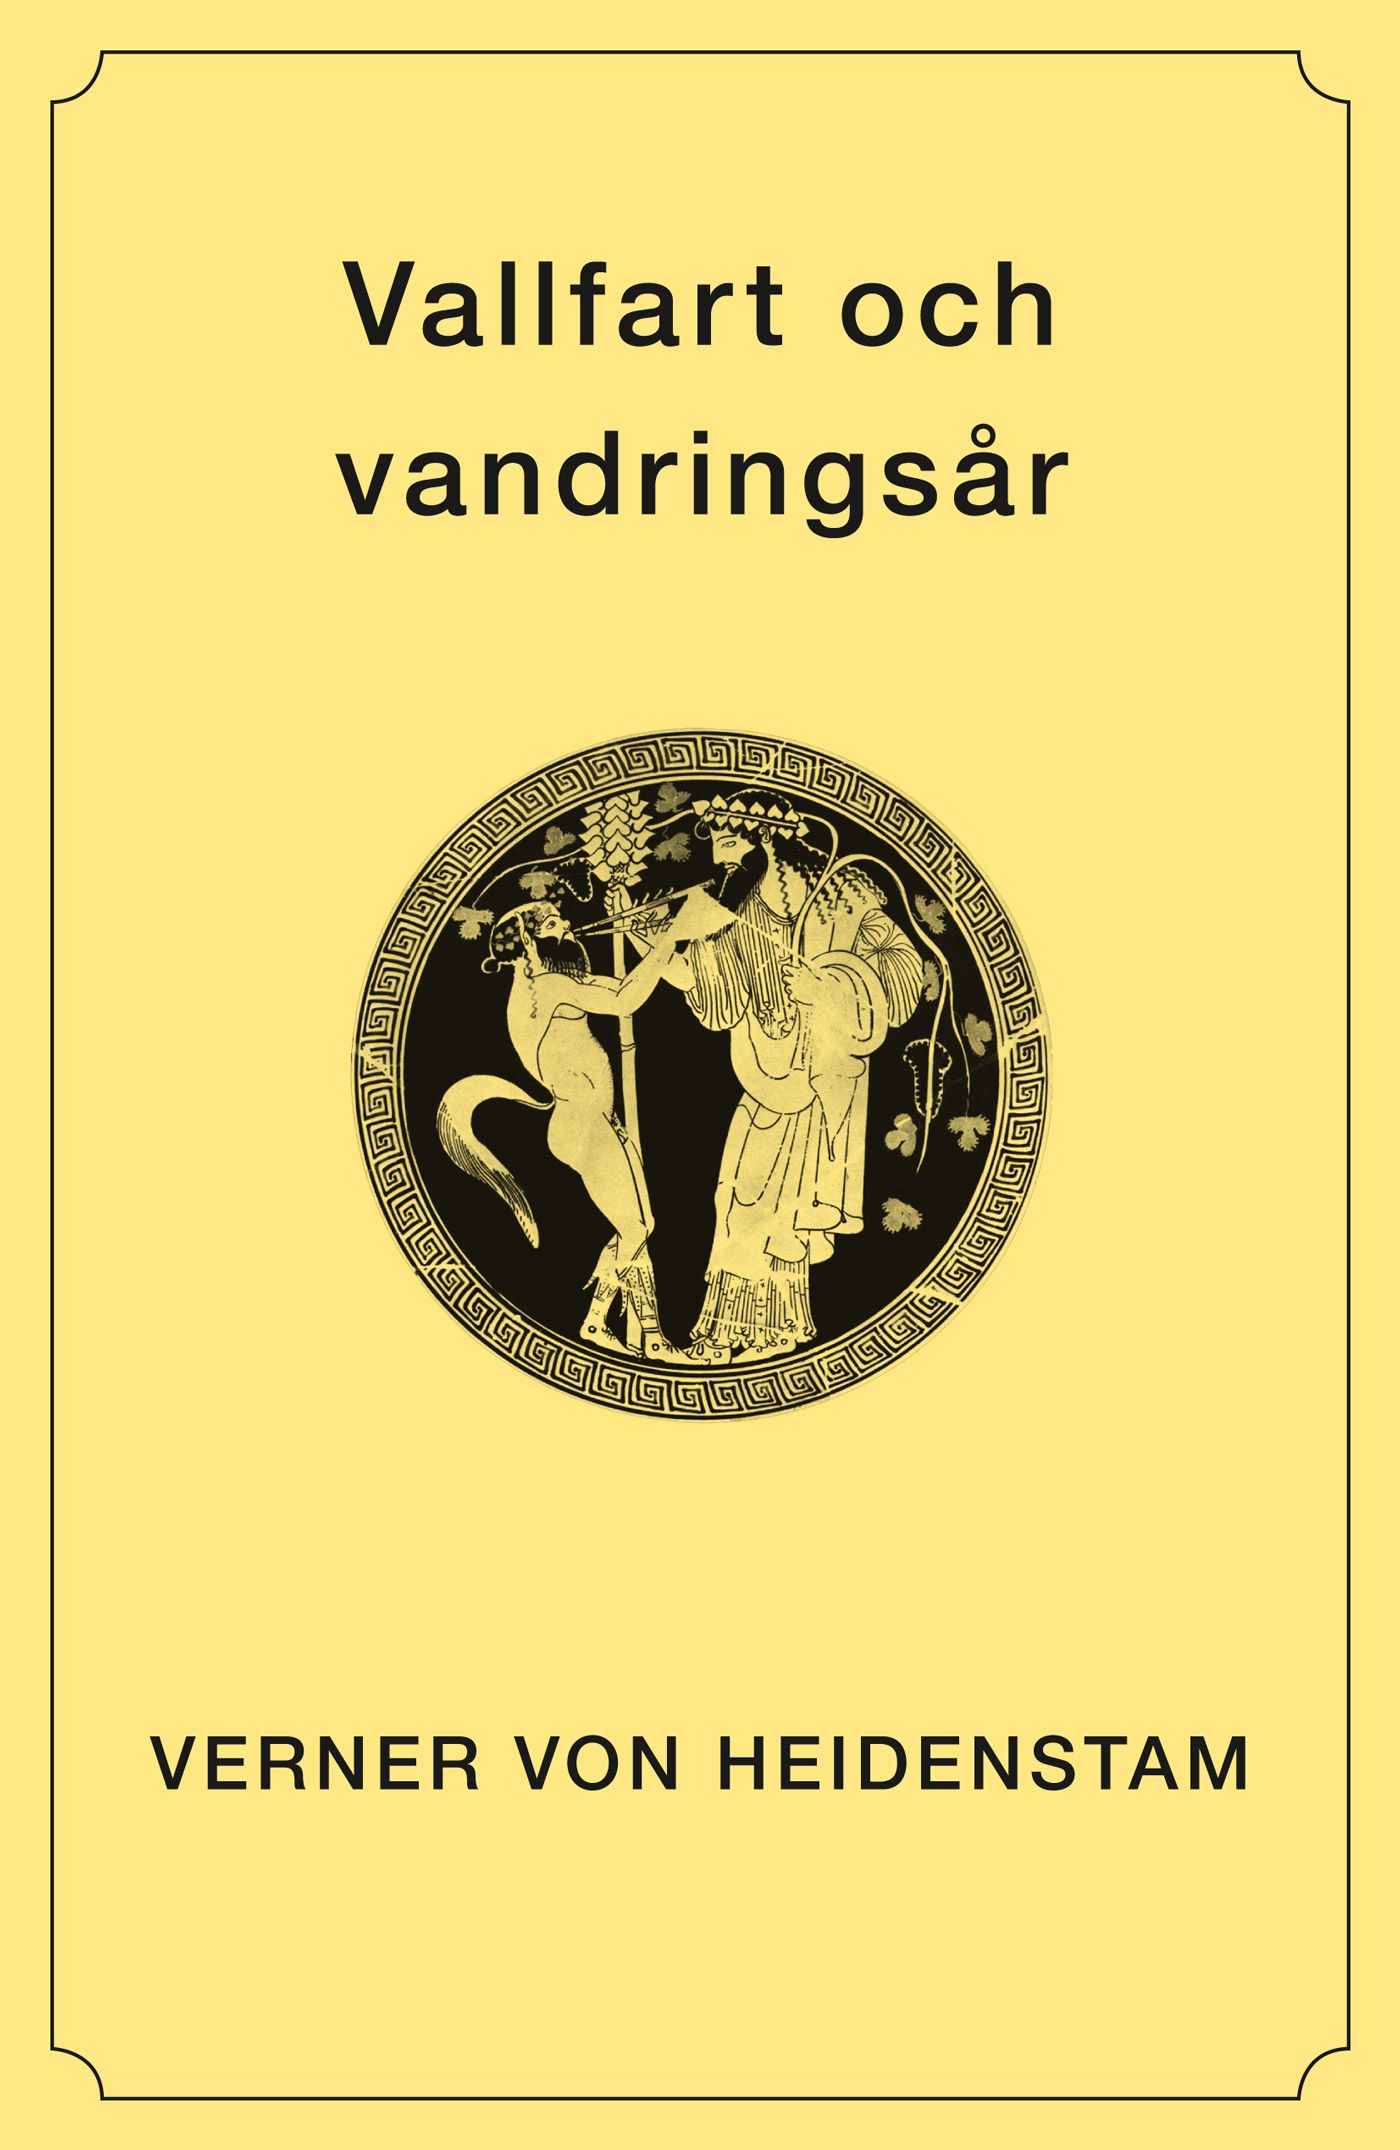 Vallfart och vandringsår, eBook by Verner von Heidenstam